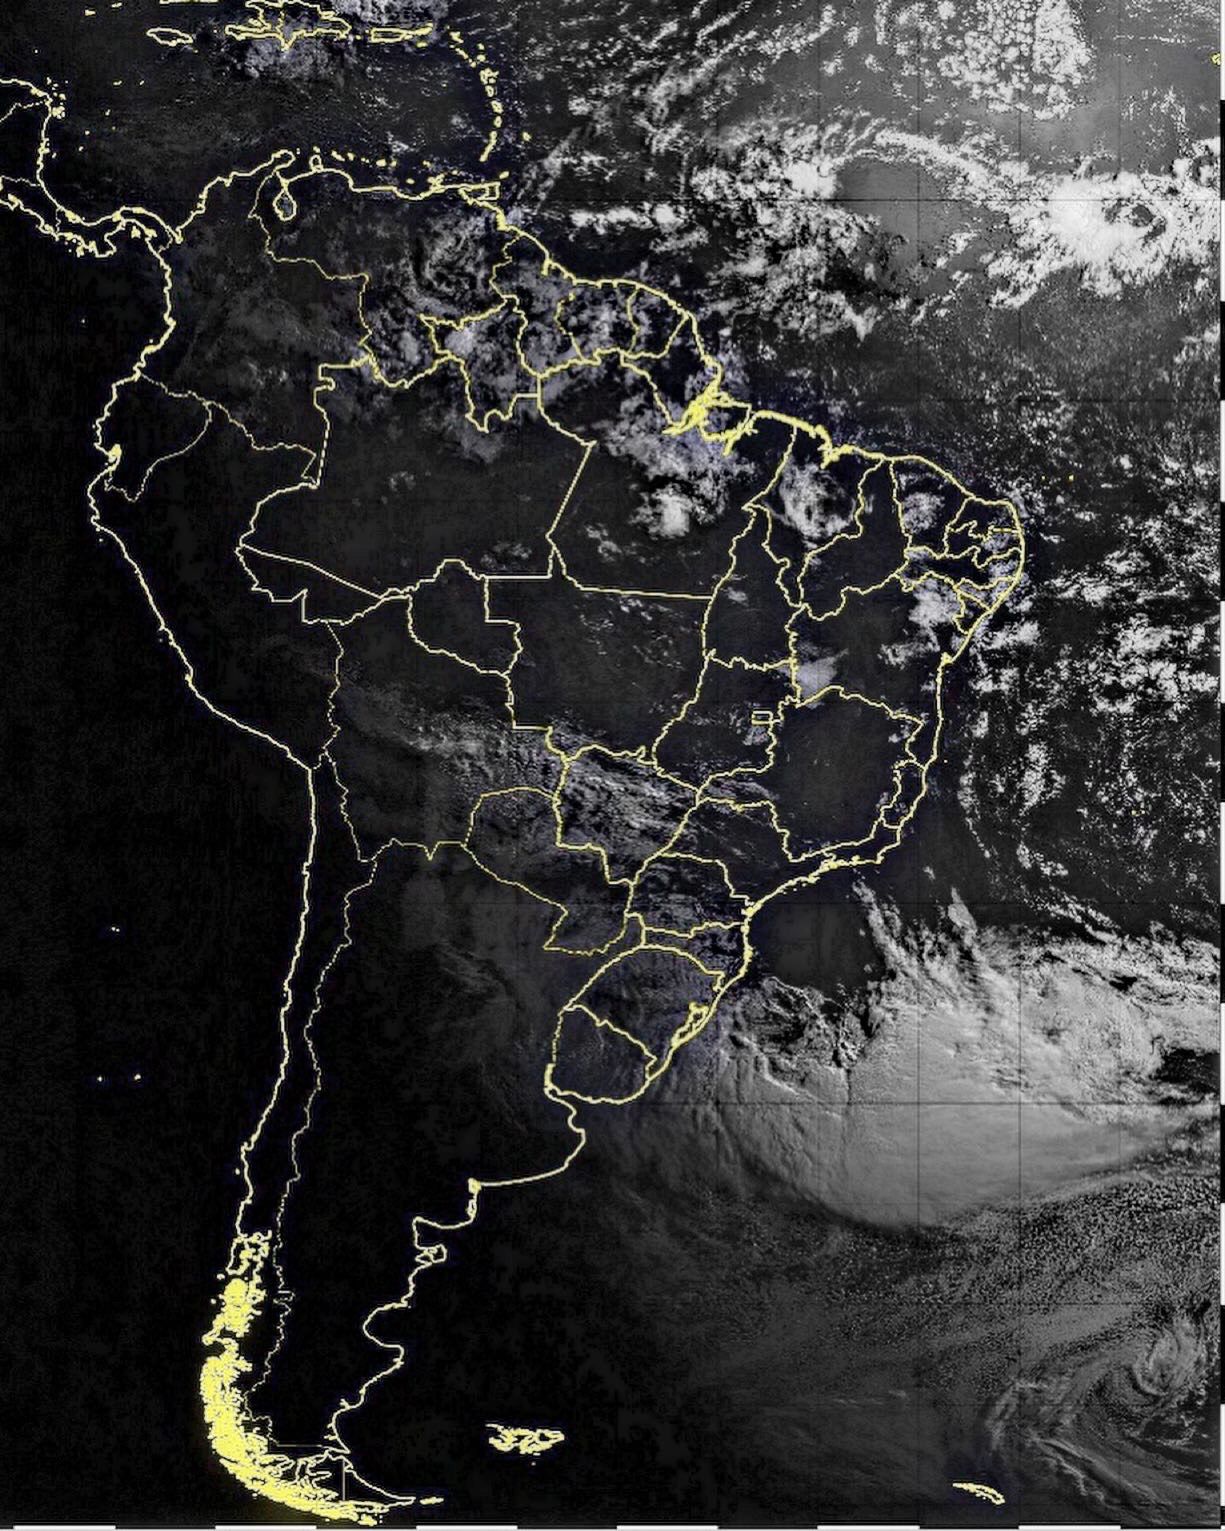 Imagens do Ciclone Extratropical de quarta e quinta mostram o “olho”, centro de baixa pressão junto a costa do Rio Grande do Sul e subindo para Santa Catarina. O vento Sul derrubou muitas arvores em todo o litoral gaúcho.